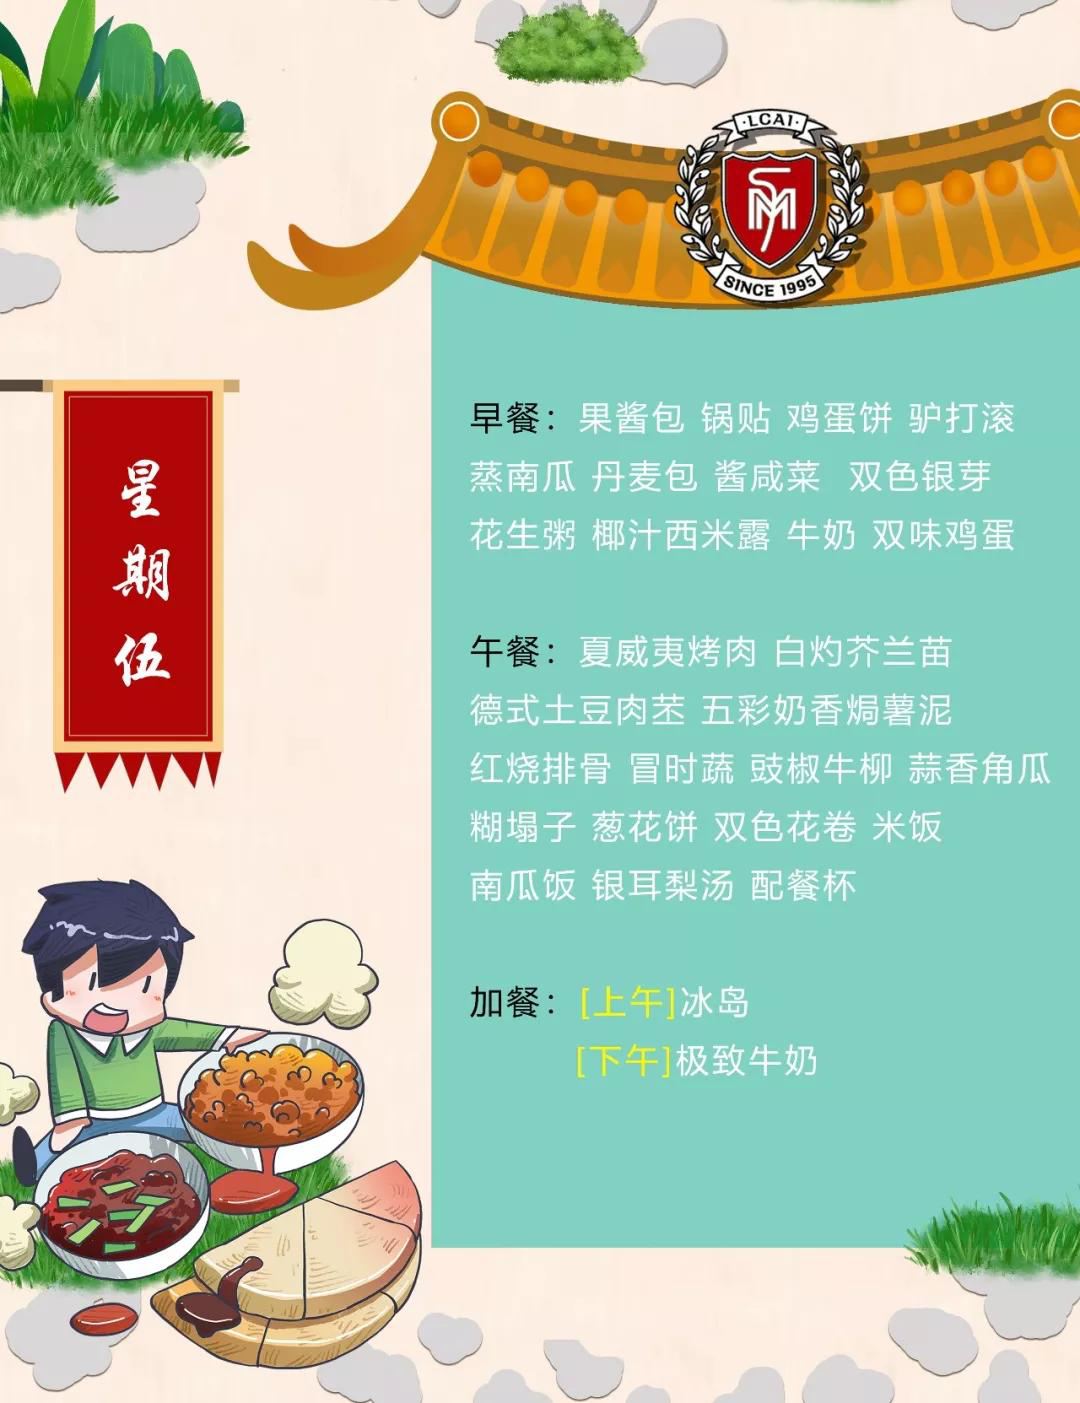 【力迈】Weekly Menu  第十一周美味菜谱(图6)